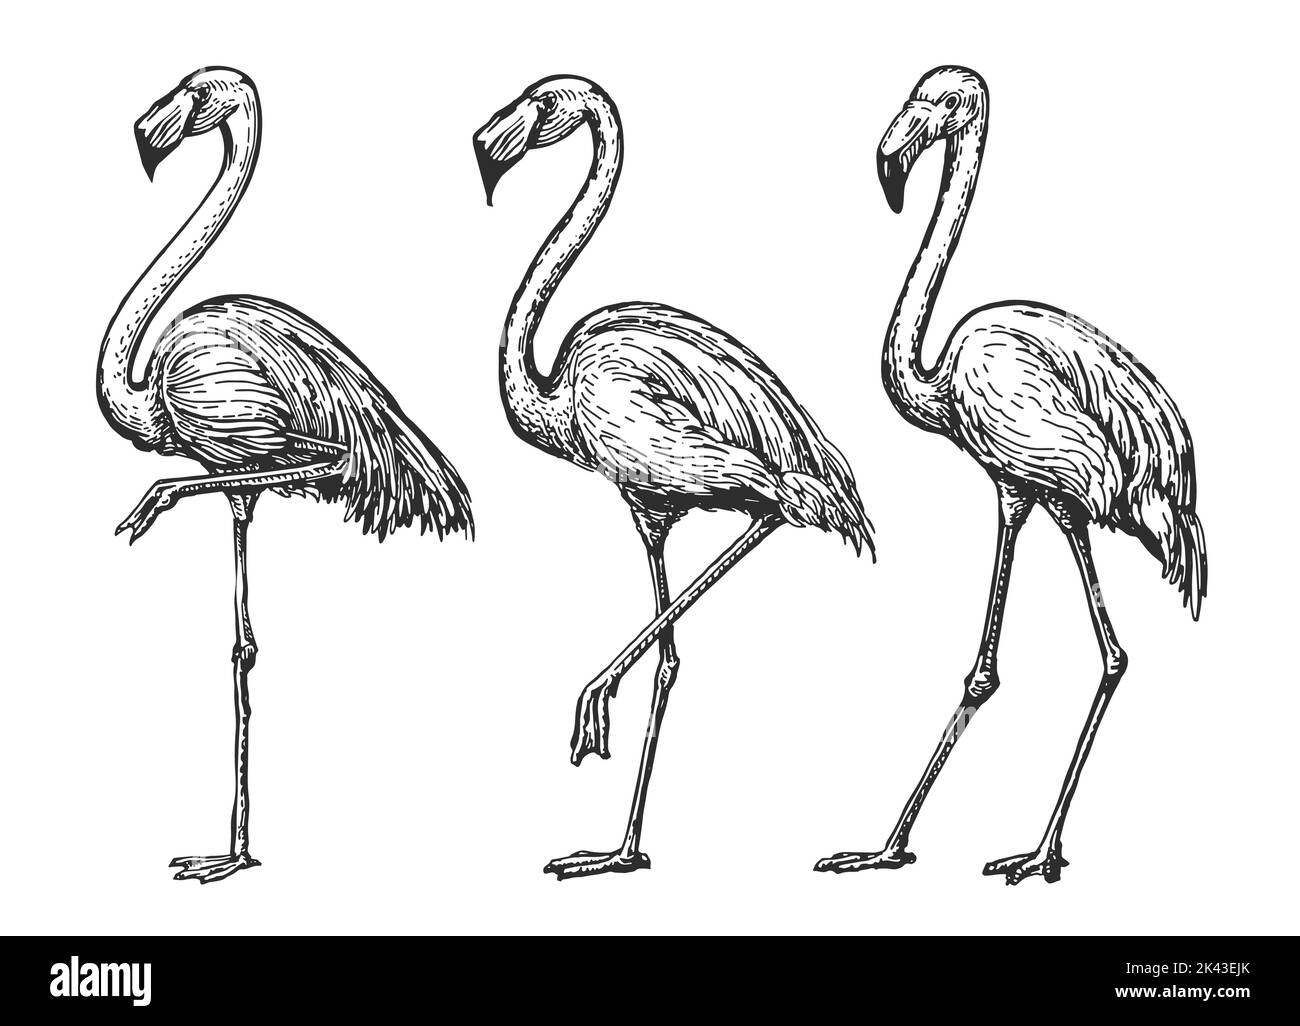 Disegno Flamingo. Set di uccelli tropicali esotici. Animali selvatici isolati illustrazione vettoriale in stile di incisione vintage Illustrazione Vettoriale